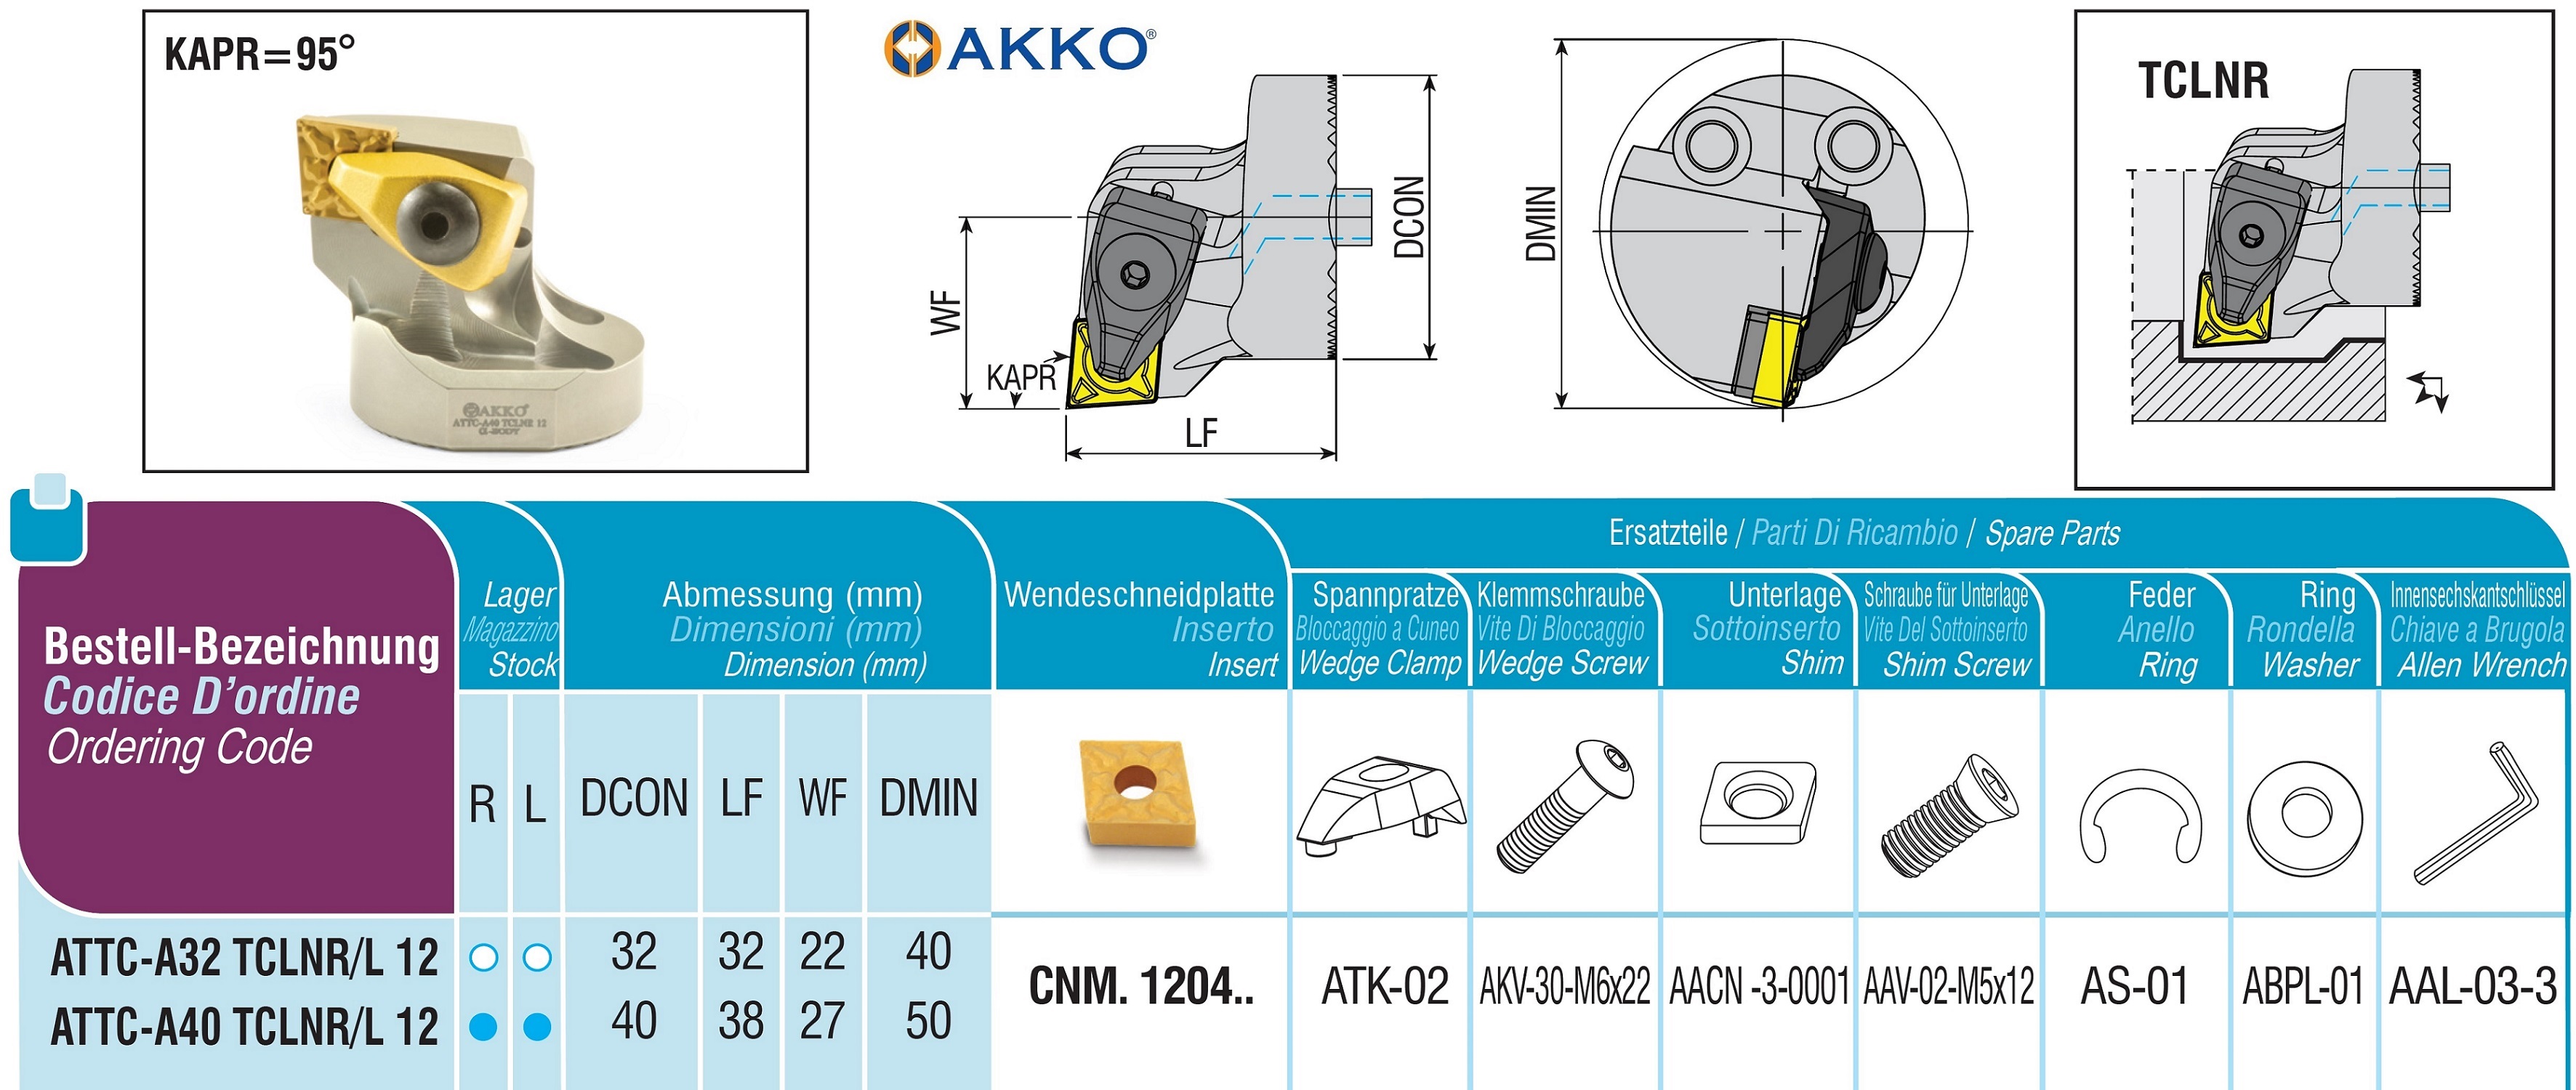 AKKO-Wechselkopf für schwingungsgedämpfte Bohrstange, ø = 40 mm, für Wendeplatte CNM. 1204.., mit Innenkühlung, für eine hohe Oberflächenqualität bei großer Auskraglänge, rechte Ausführung 